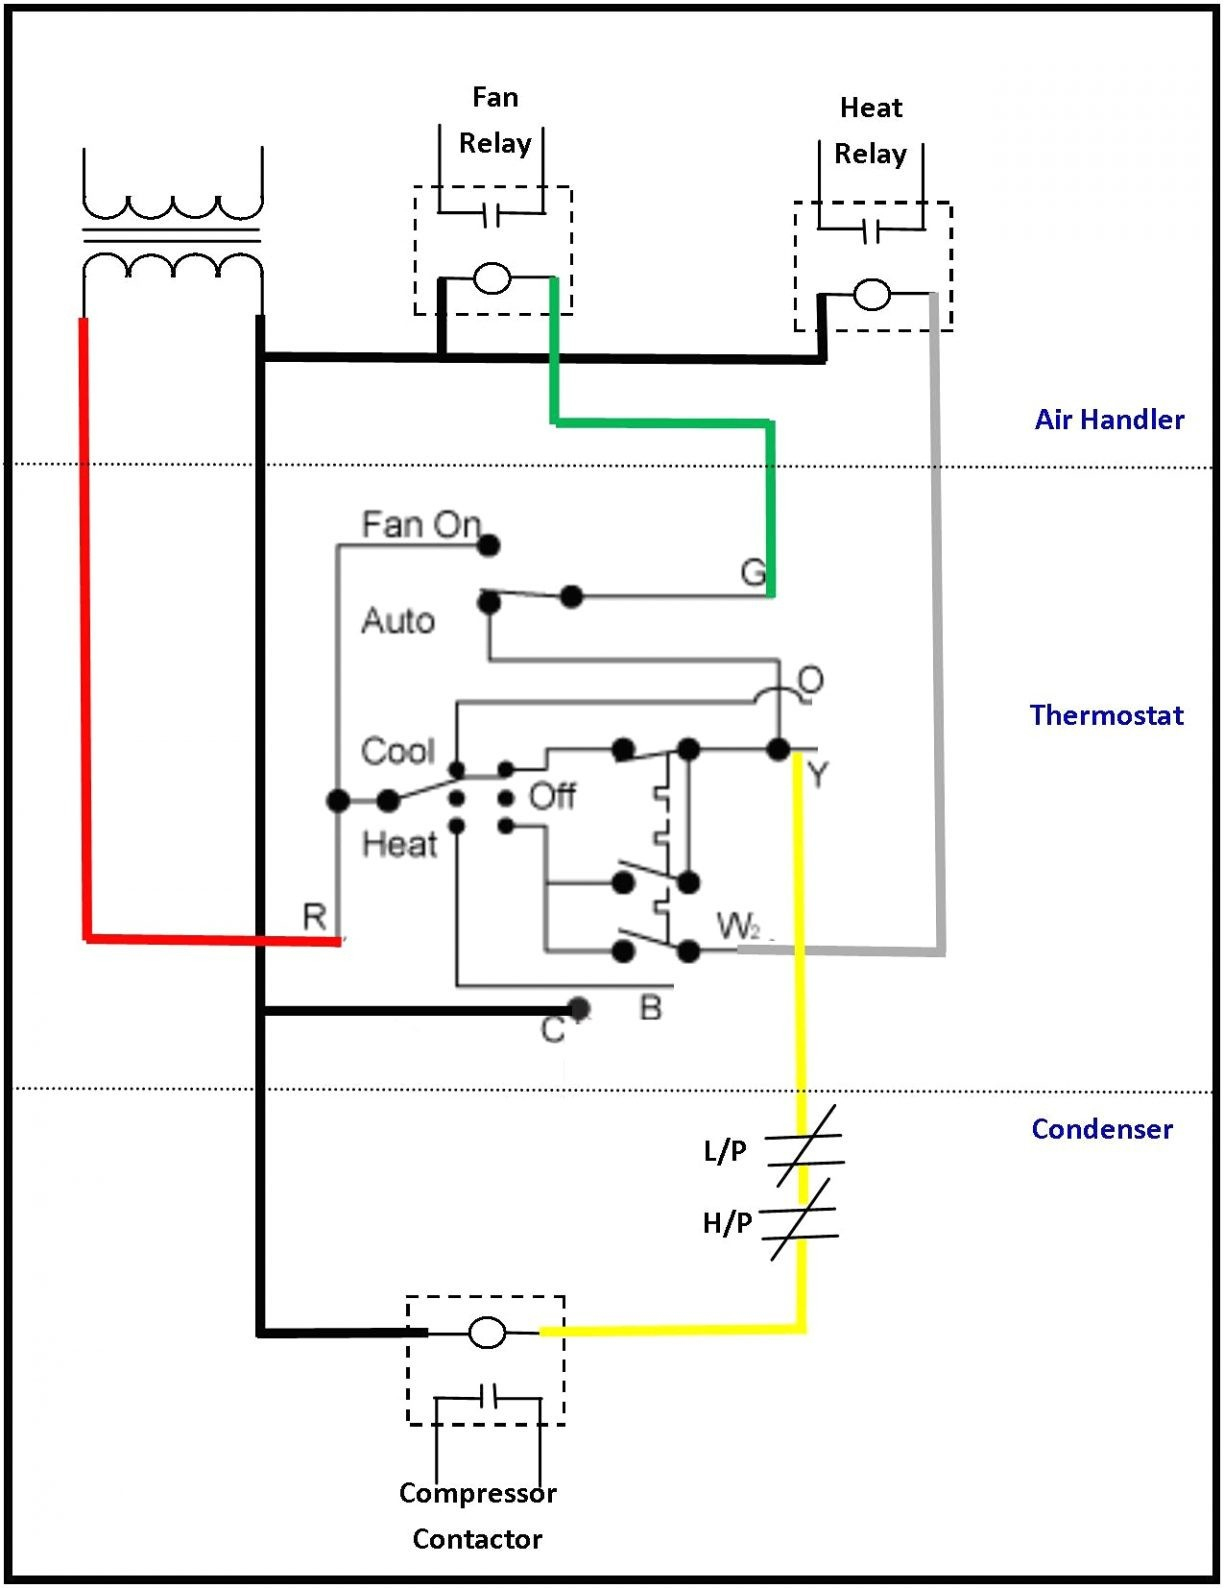 Coleman Rv Air Conditioner Capacitor Diagrams - Wiring Diagrams - Coleman Rv Air Conditioner Wiring Diagram